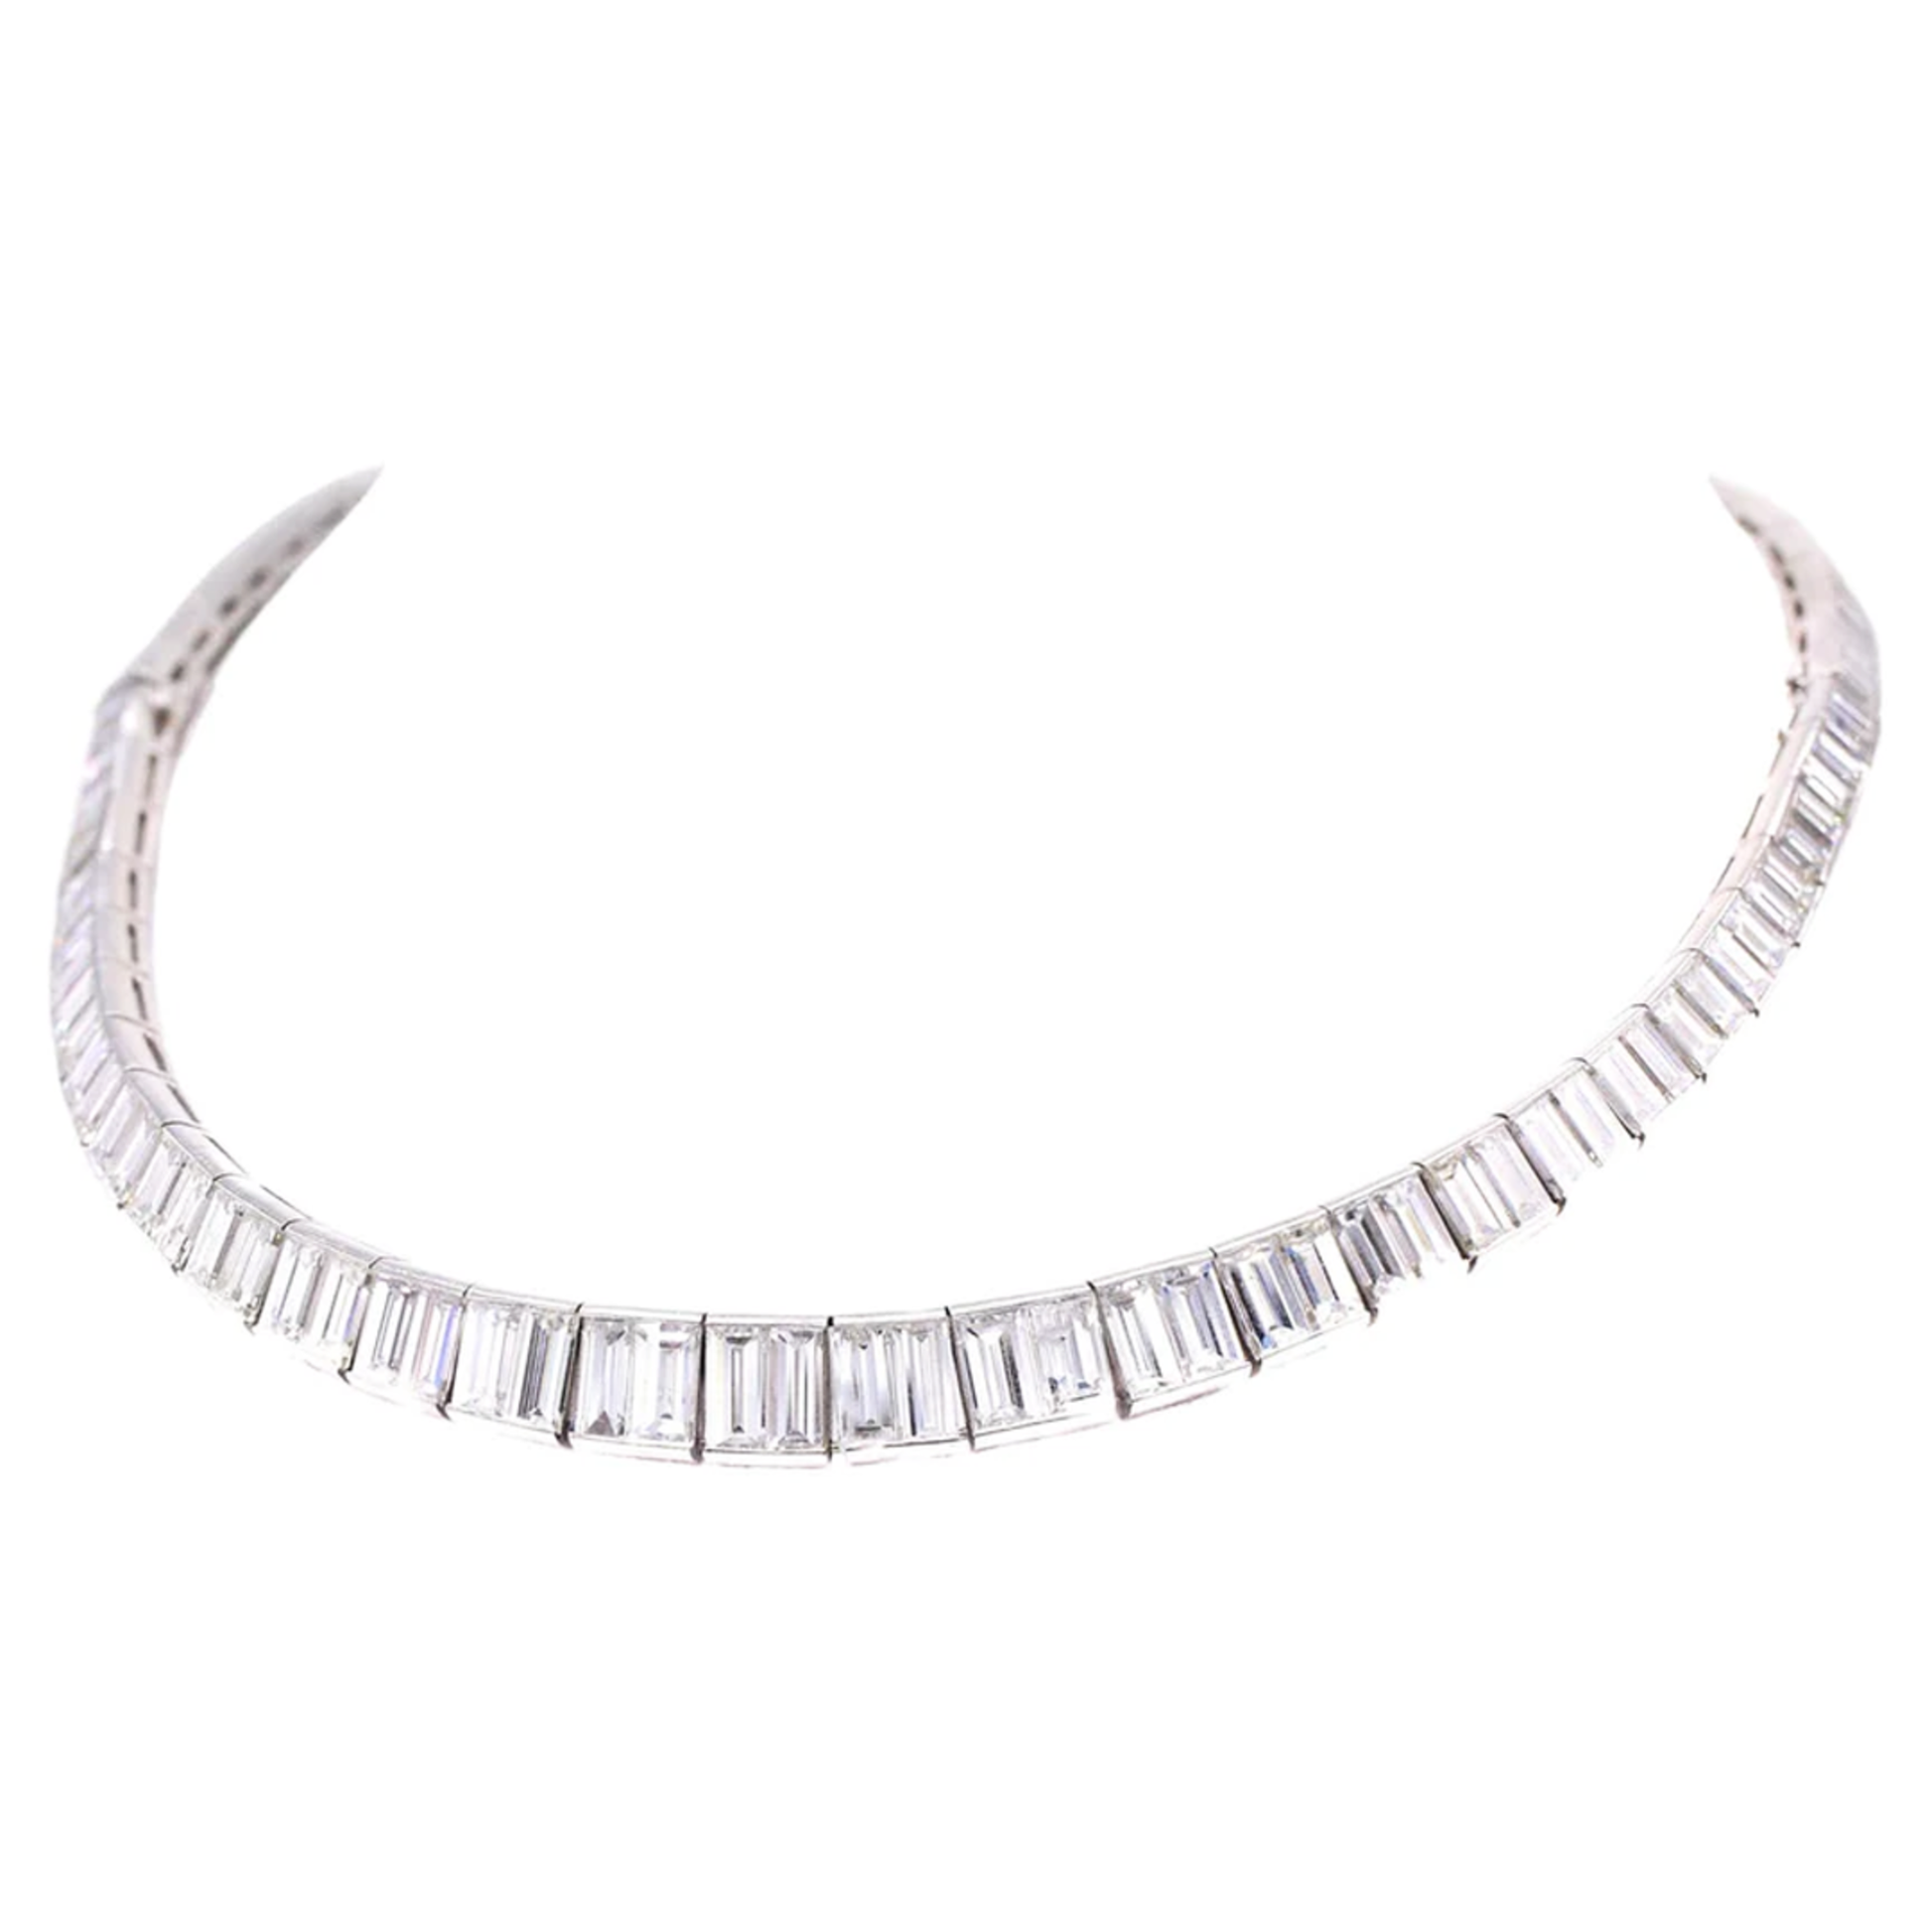 1950s Platinum Diamond Necklace/Bracelet front